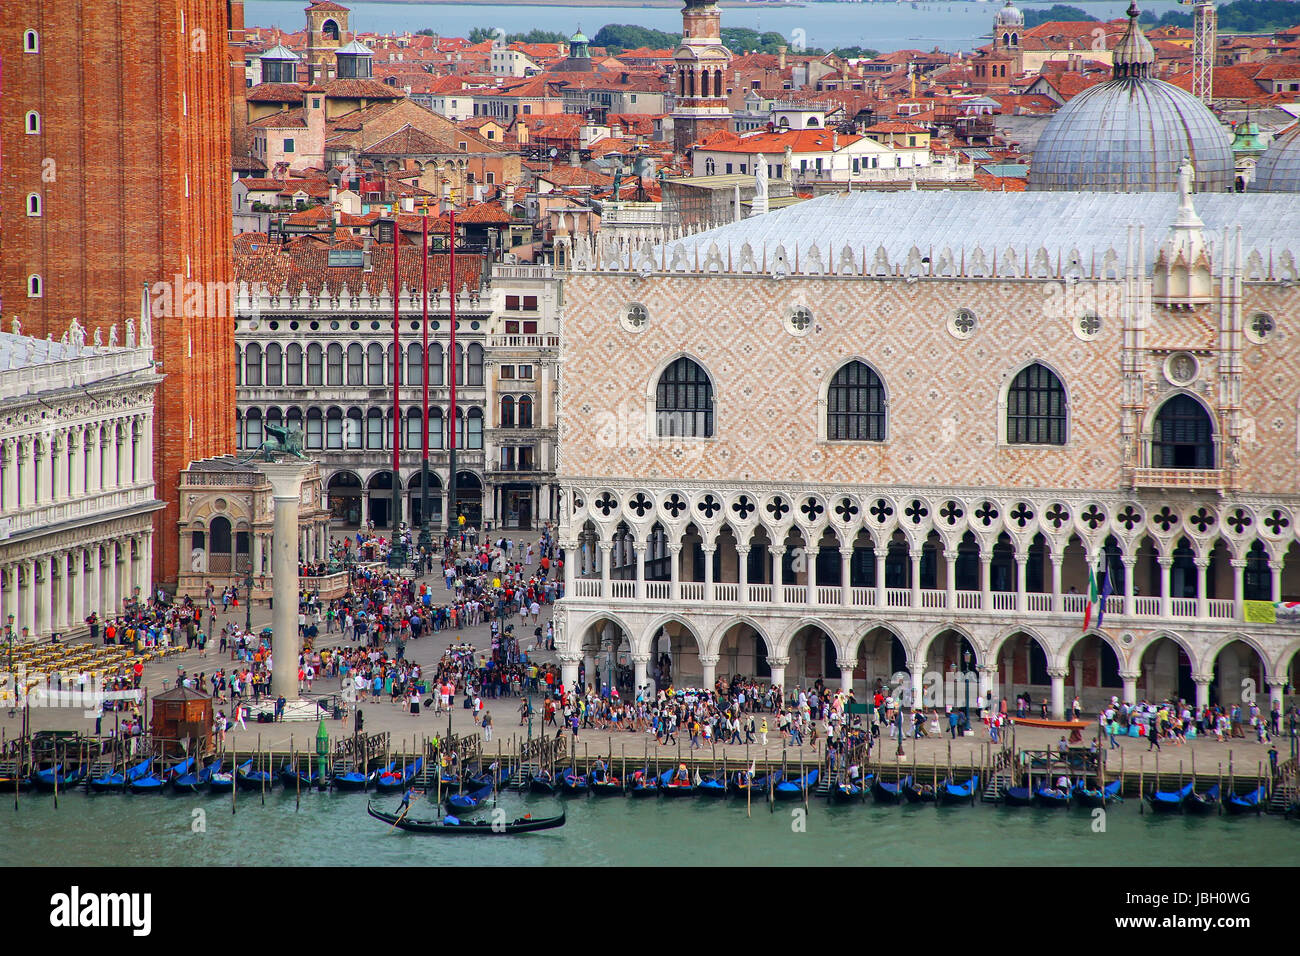 Piazzetta San Marco avec le Palais des Doges et le campanile de Saint Marc à Venise, Italie. Venise est l'une des destinations touristiques les plus importants dans le monde entier Banque D'Images